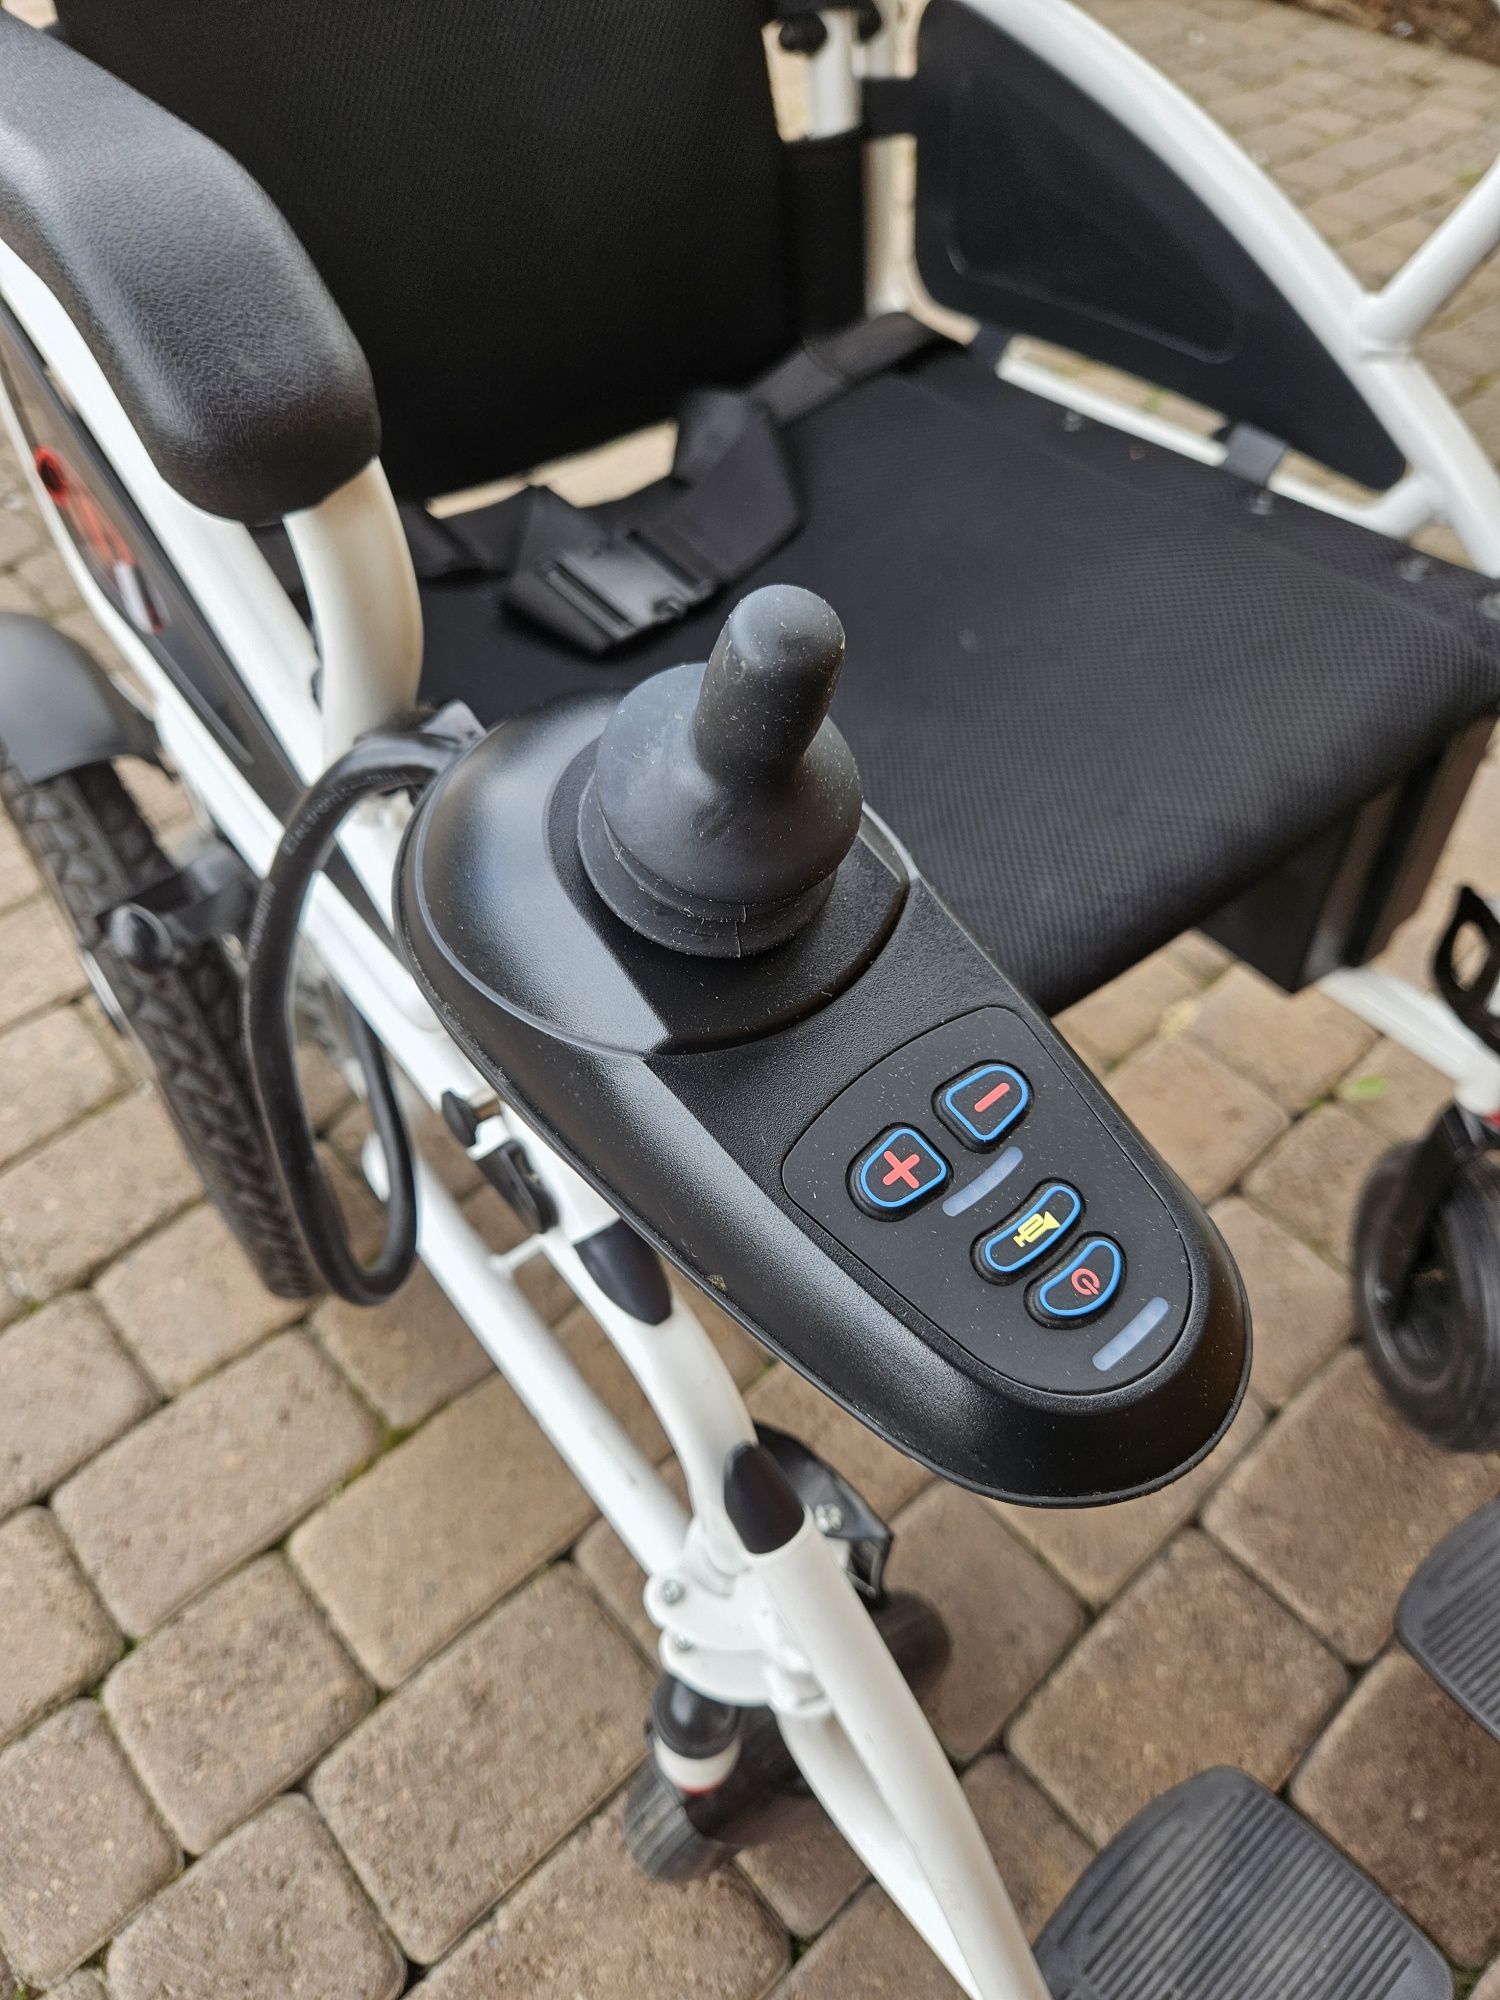 Wózek inwalidzki elektryczny składany AT52304 Antar
 
Wózki inwalidzki